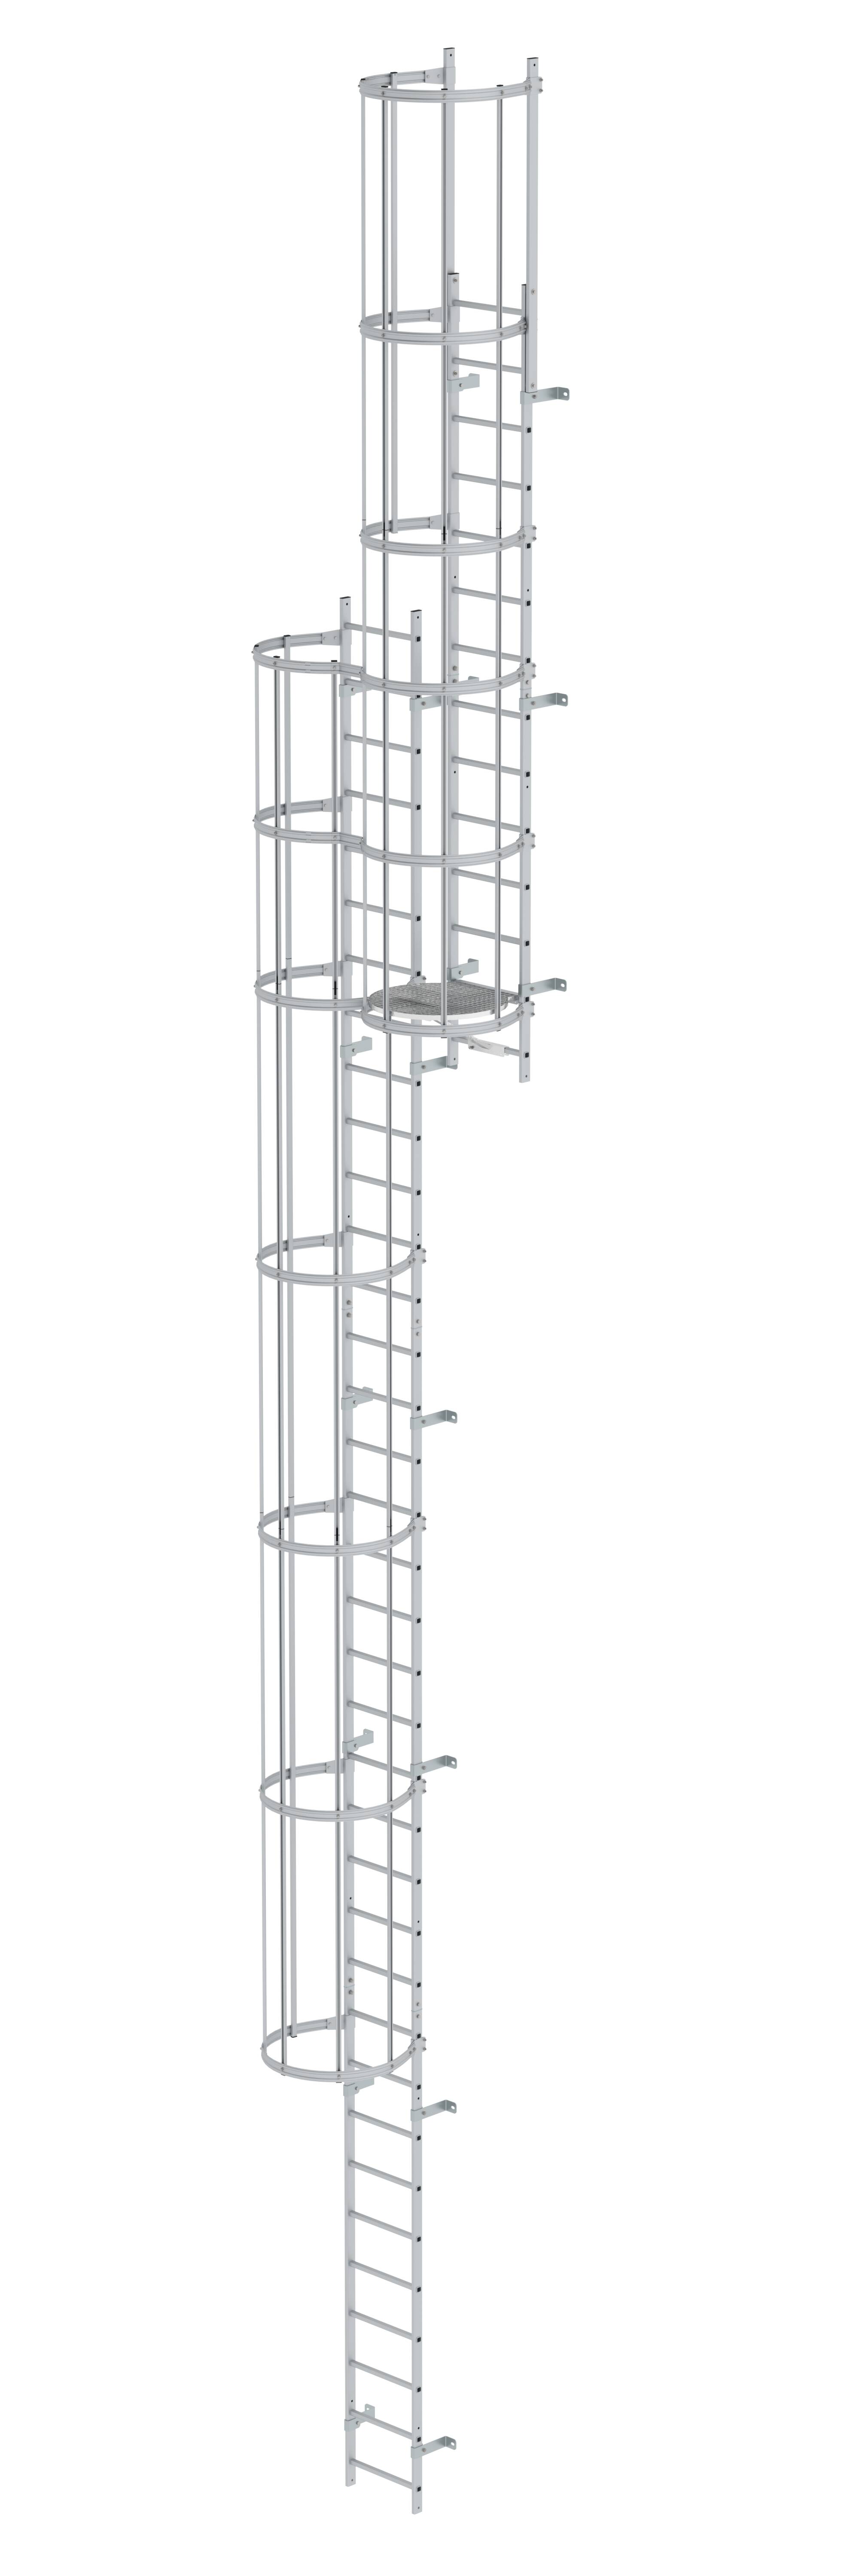 Mehrzügige Steigleiter mit Rückenschutz (Bau) Aluminium eloxiert 12,96m